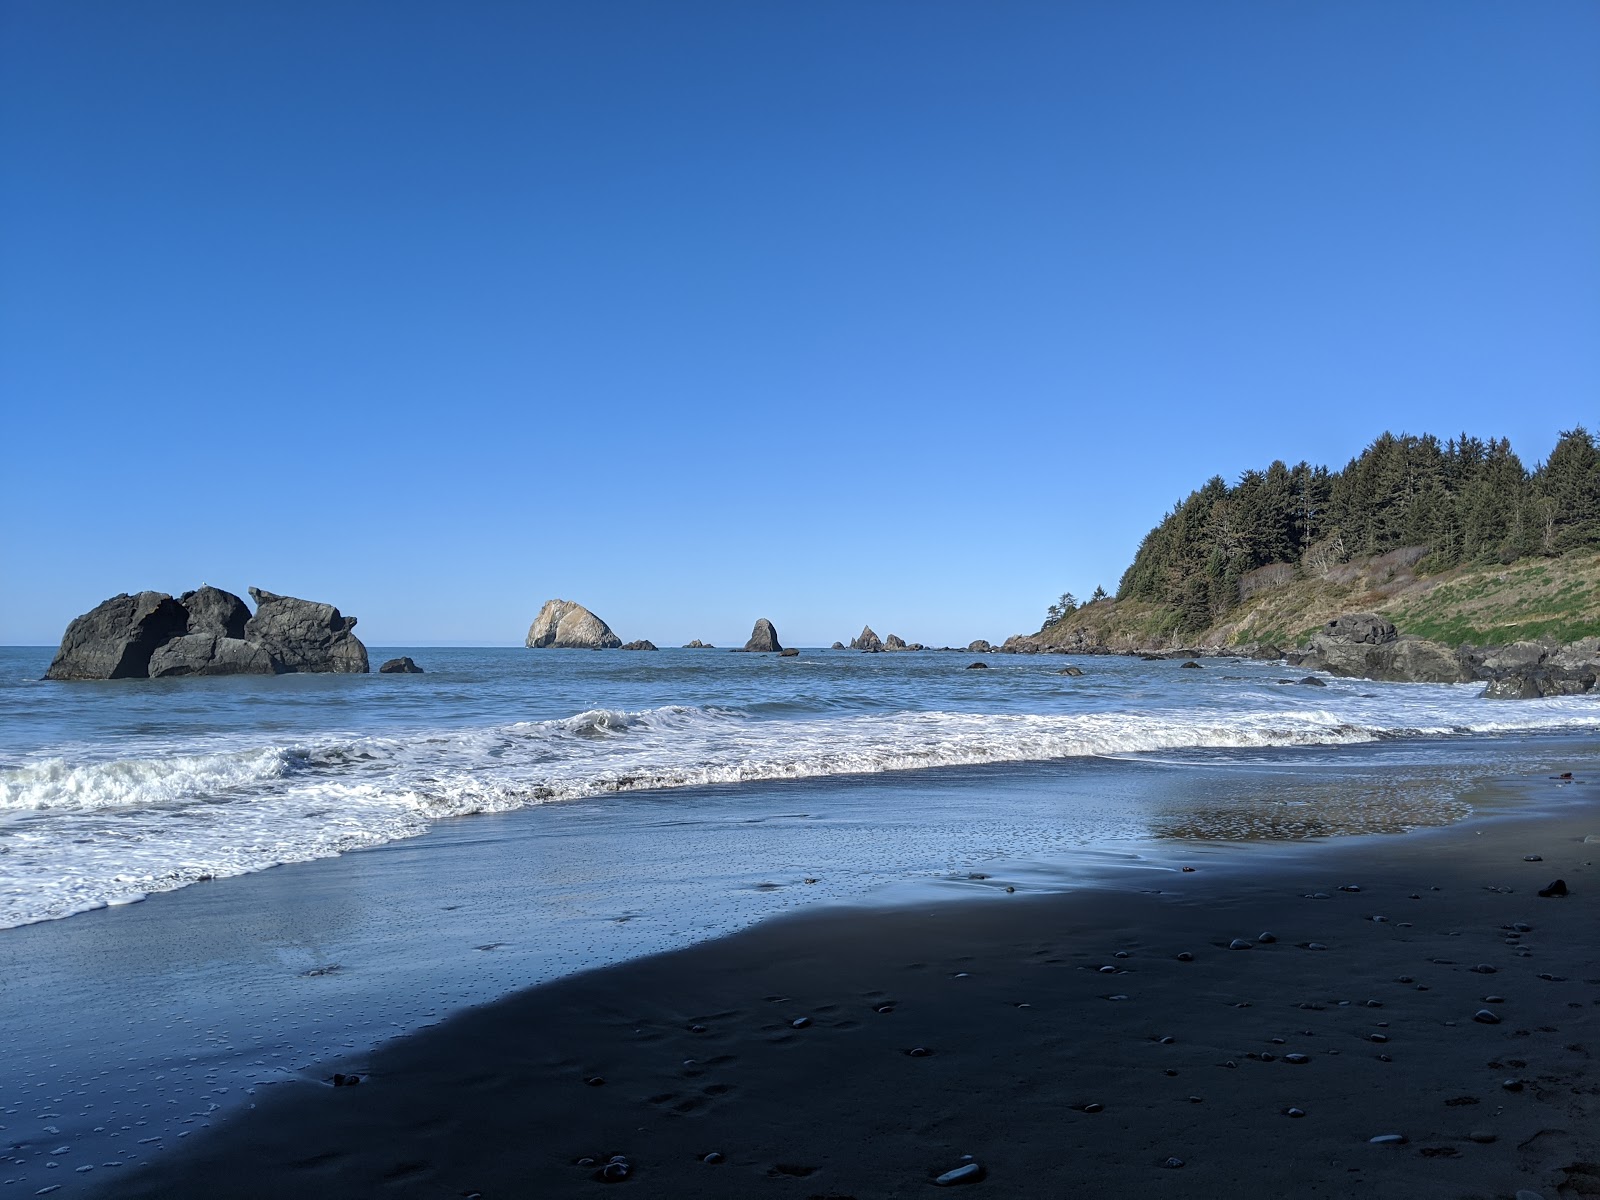 Foto av Hidden Beach med grå sand och stenar yta